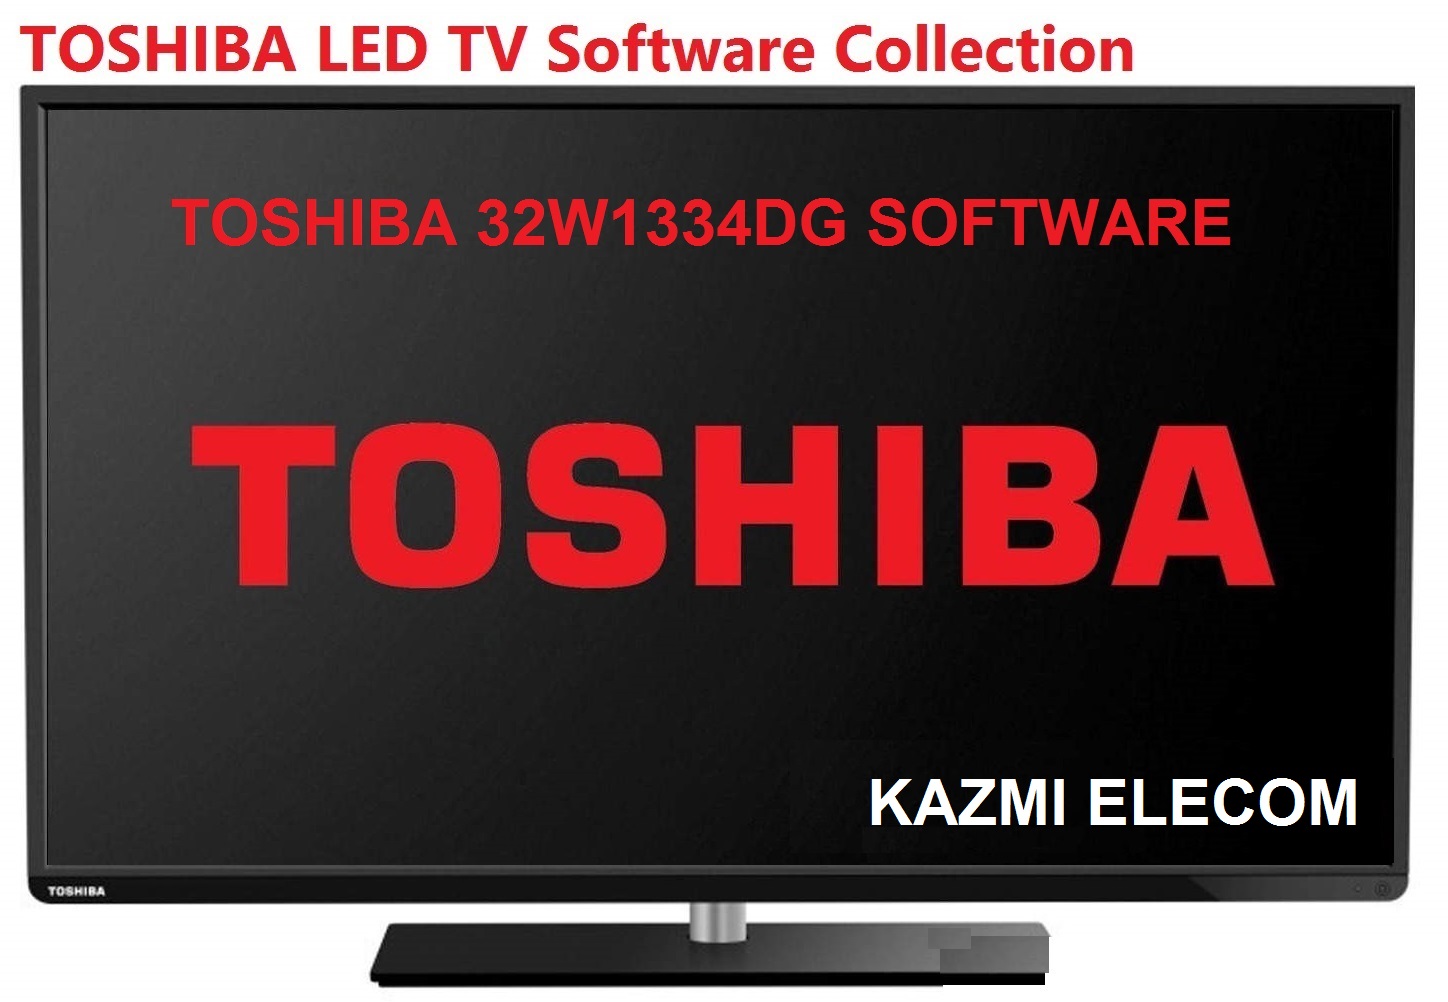 Toshiba 32W1334Dg